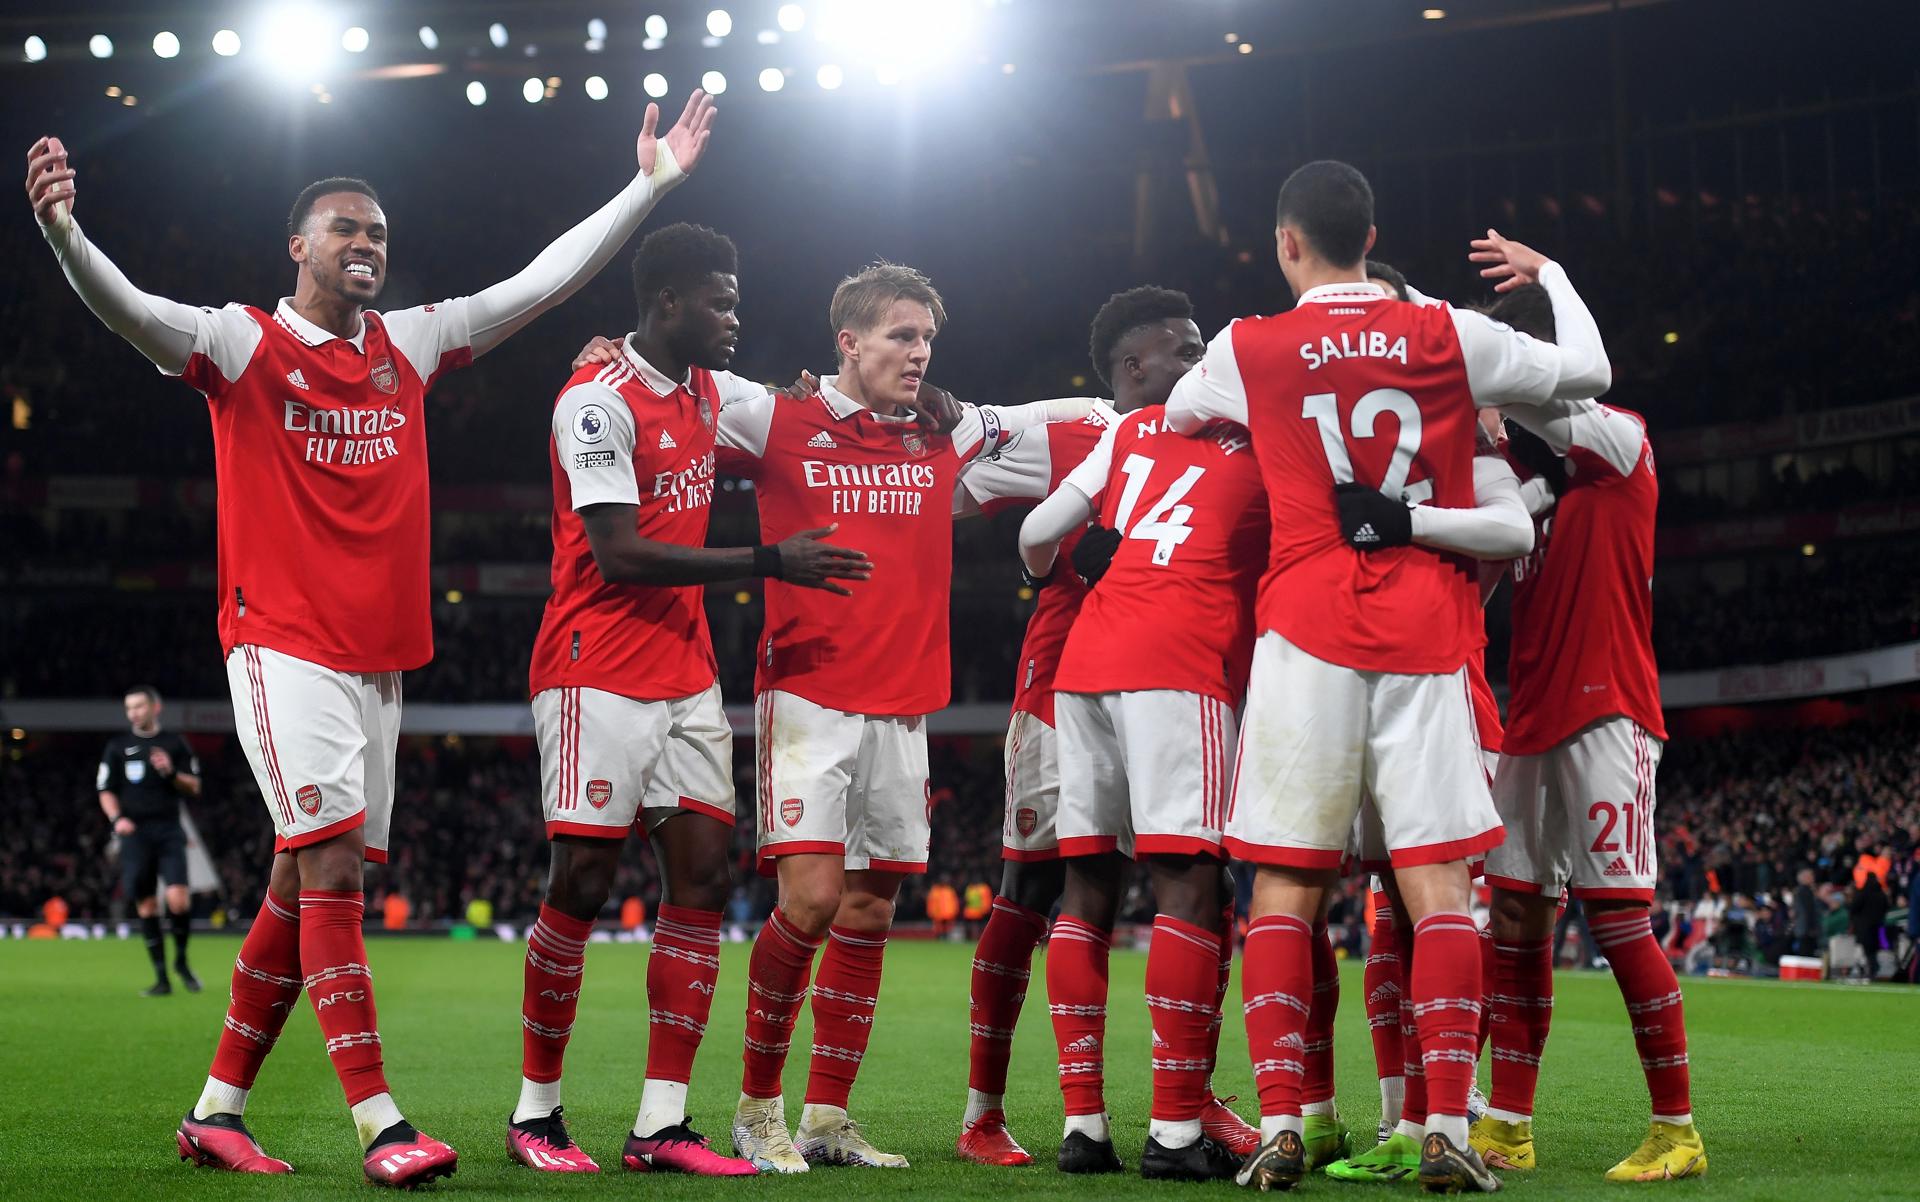 Jugadores del Arsenal de Inglaterra celebran un gol, en una fotografía de archivo. EFE/Andy Rain